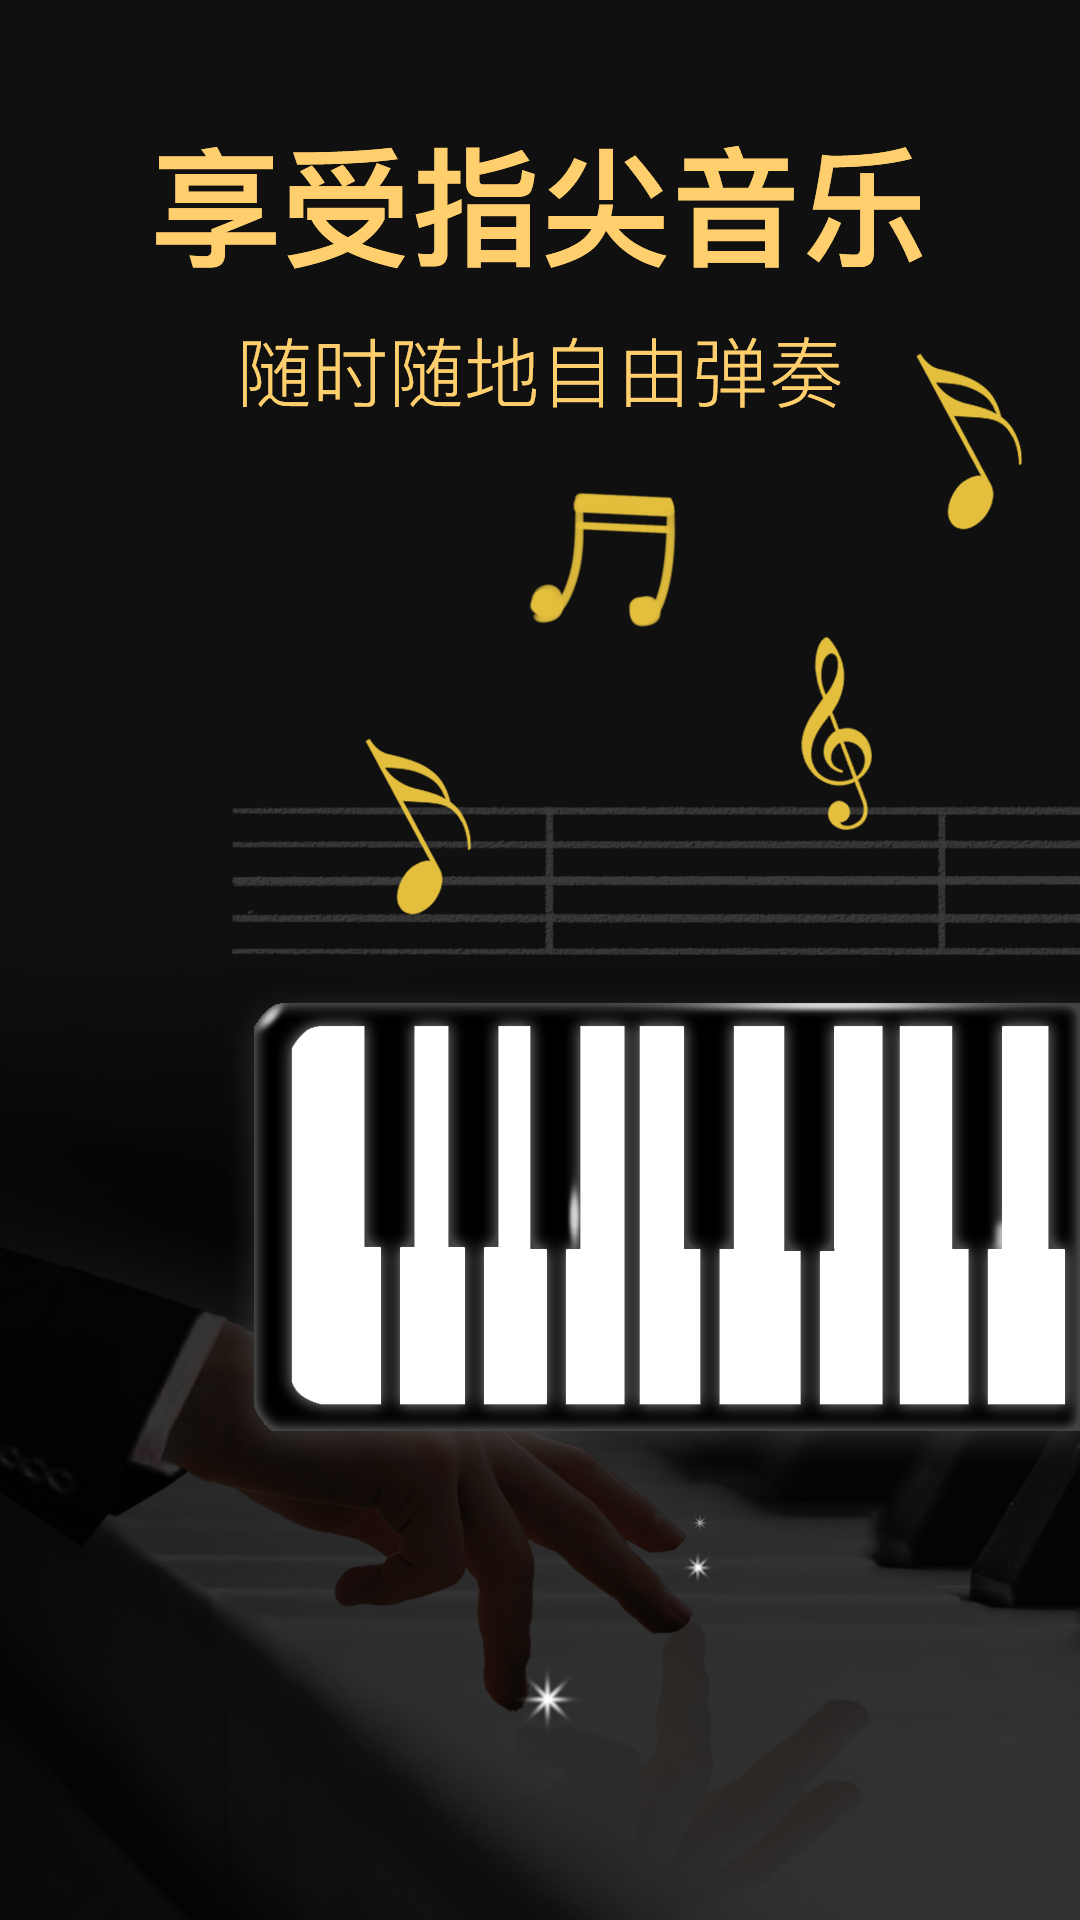 钢琴模拟器安卓版截图1